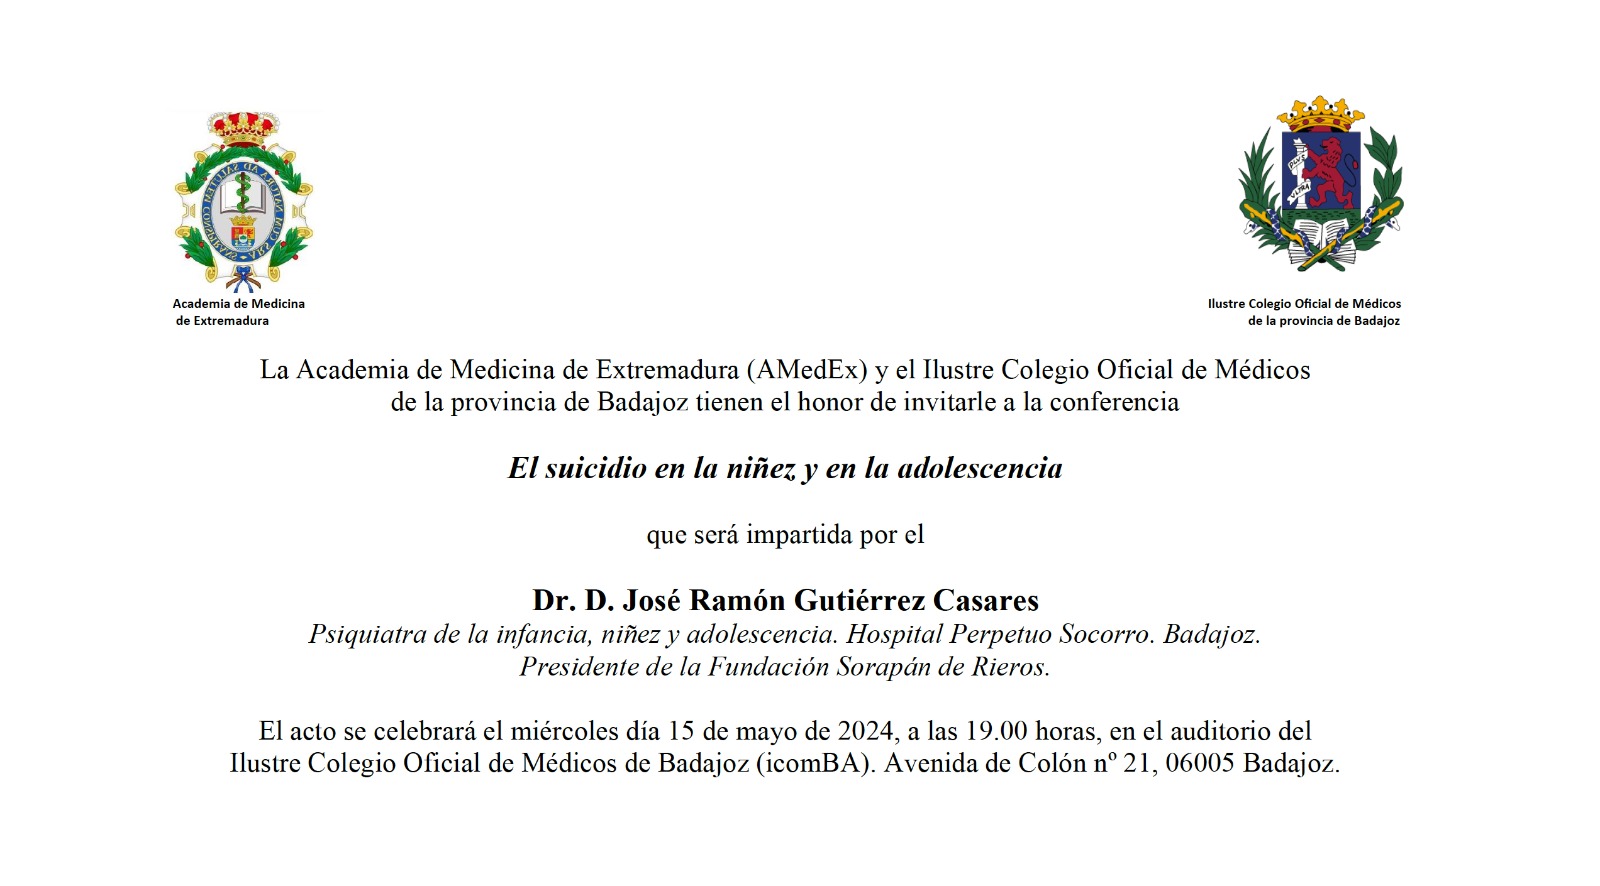 El Dr. Gutiérrez Casares impartirá una conferencia sobre el suicidio en niños y adolescentes